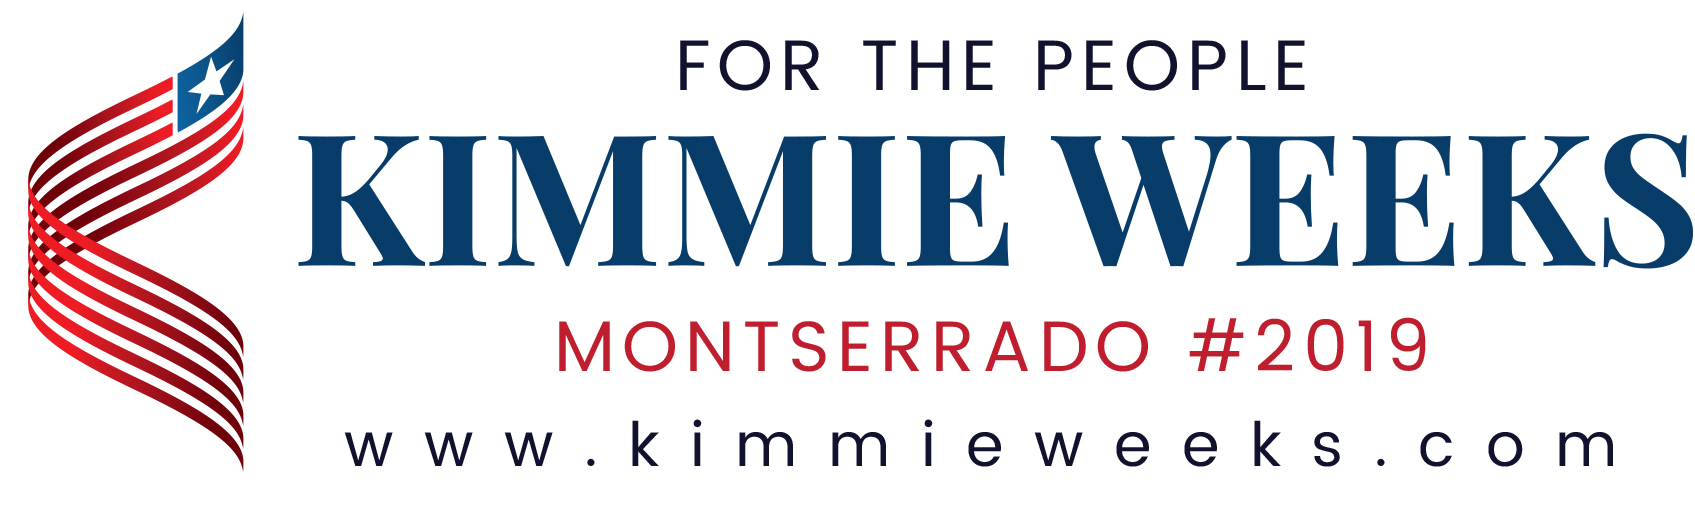 Kimmie Weeks 2019 logo